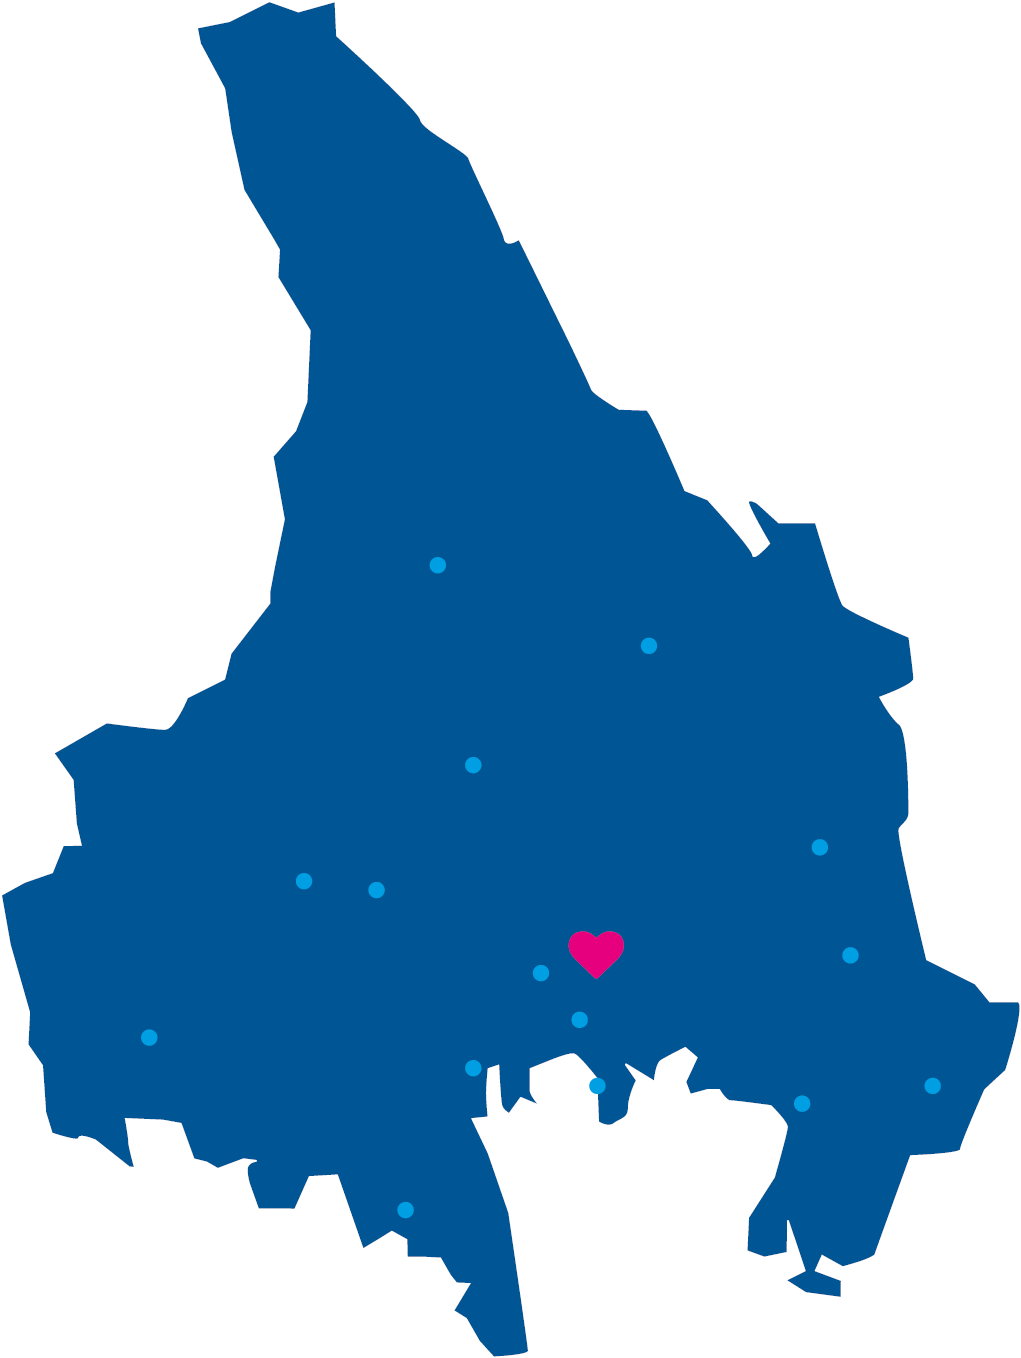 Karta över Värmland